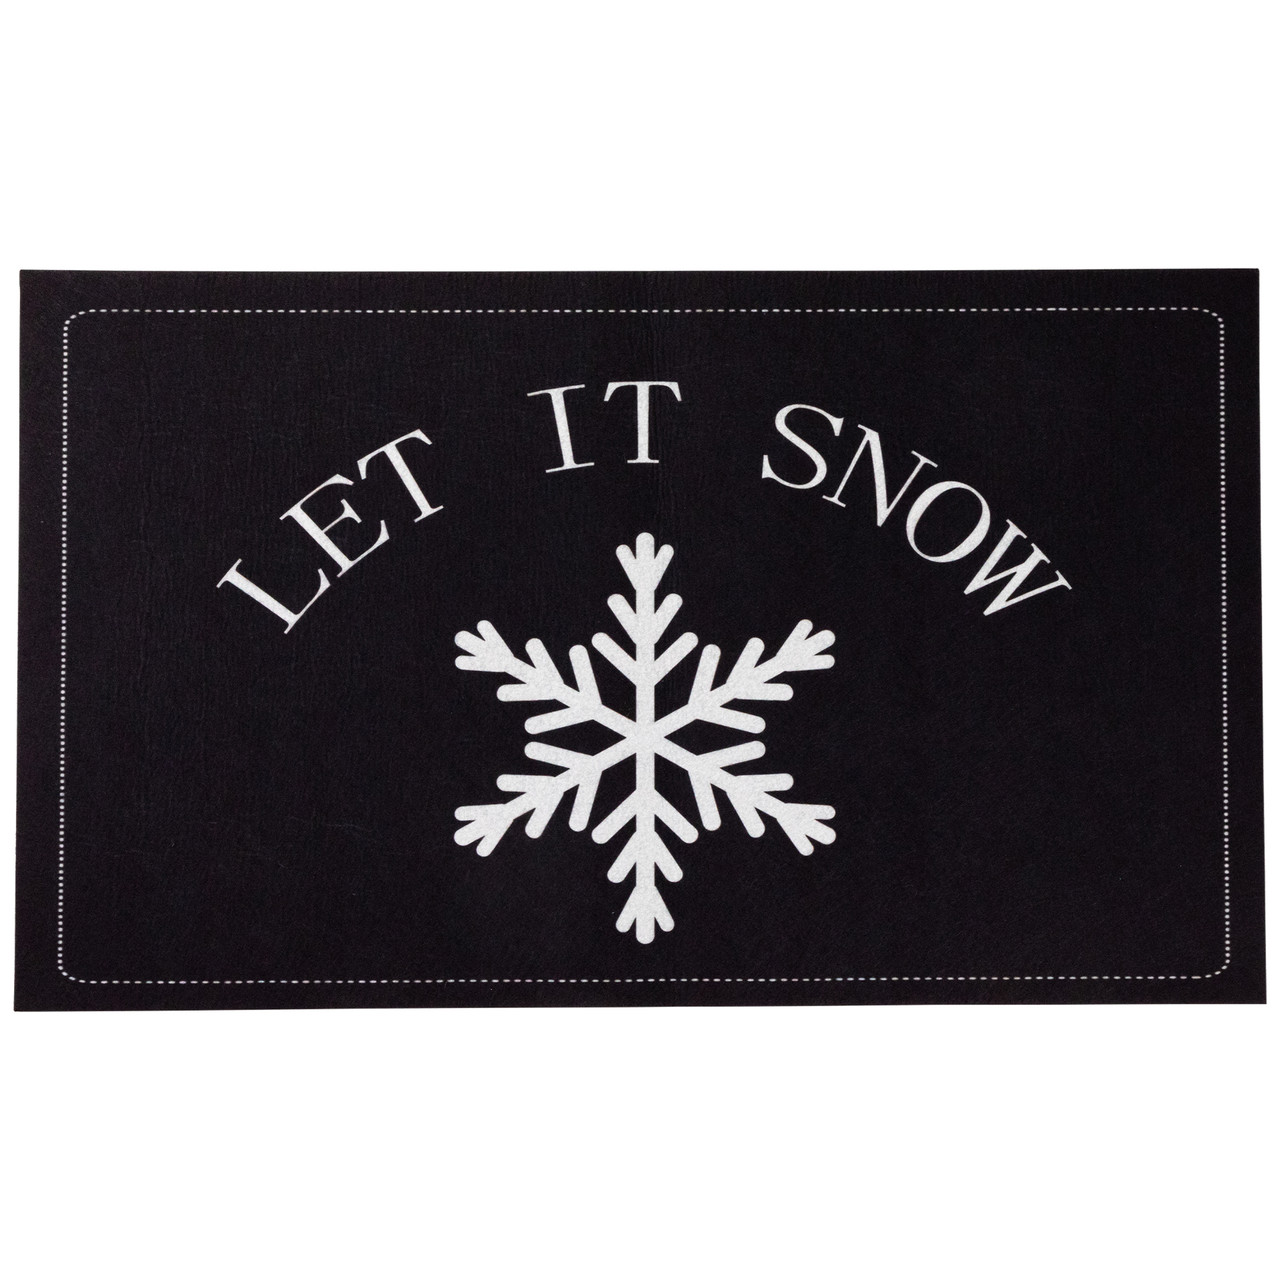 Let It Snow Christmas Doormat 29 x 17